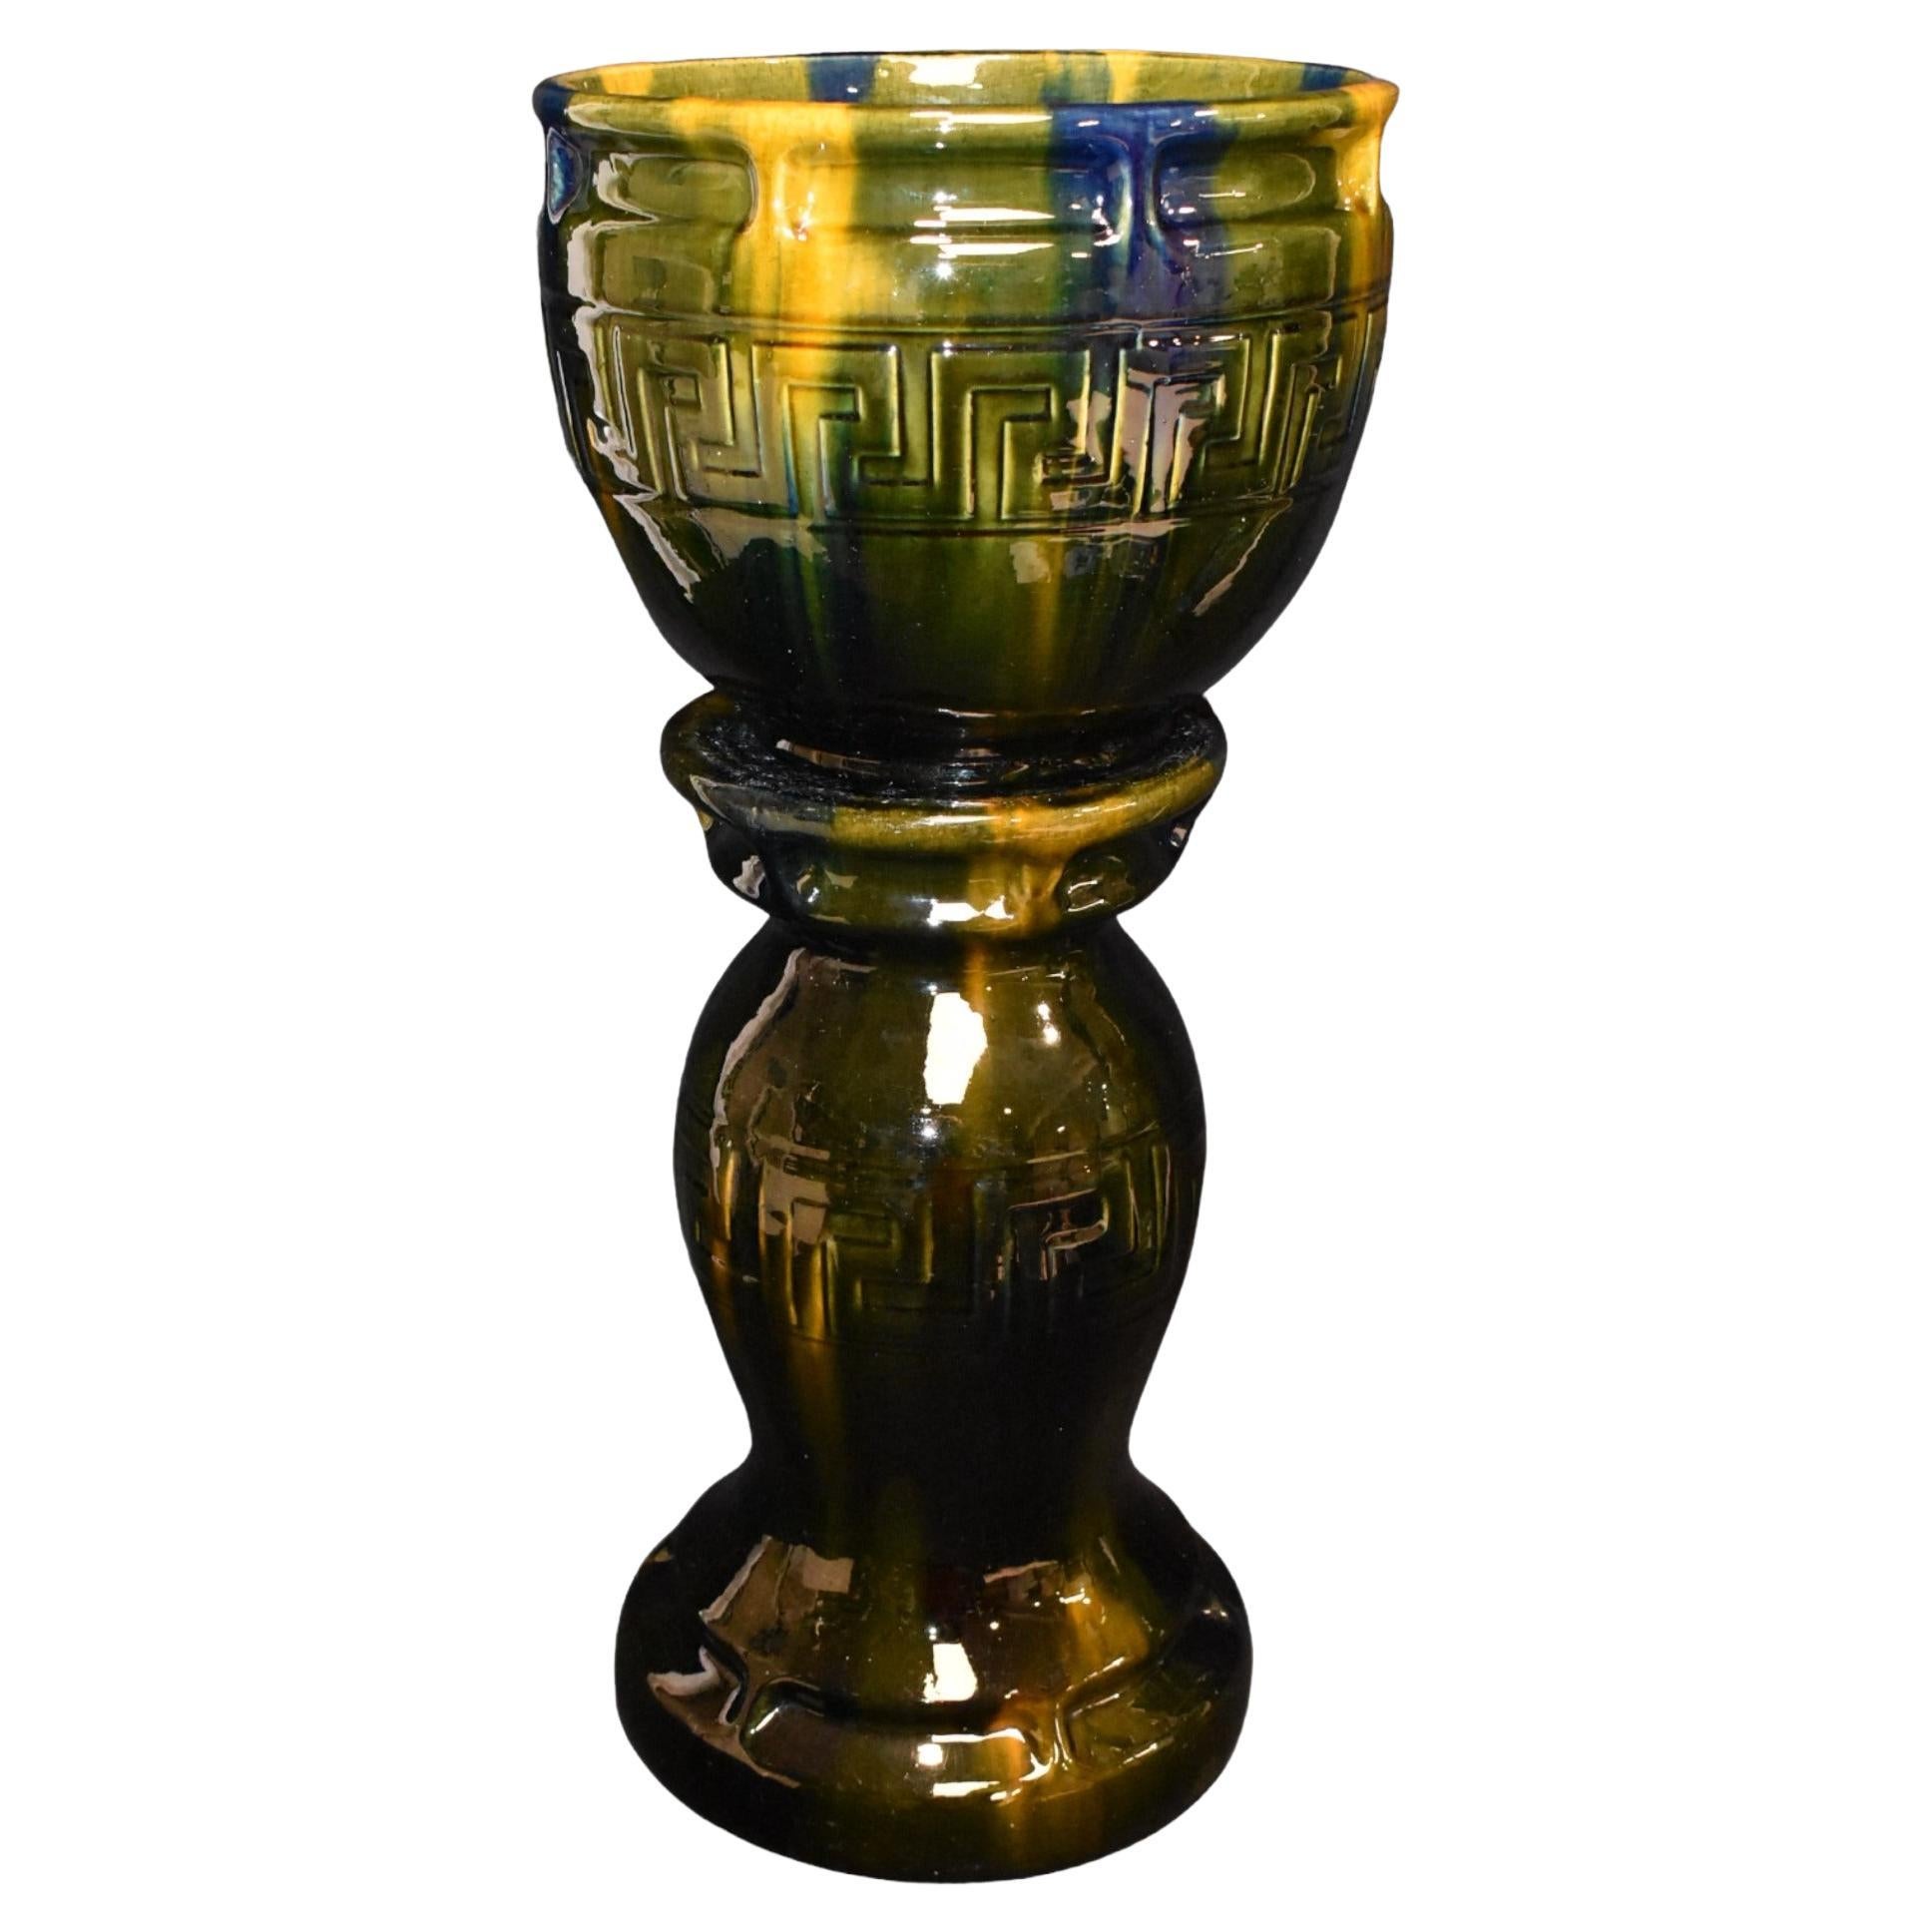 Antique Mccoy Pottery Vases - 2 For Sale on 1stDibs | mccoy vases for